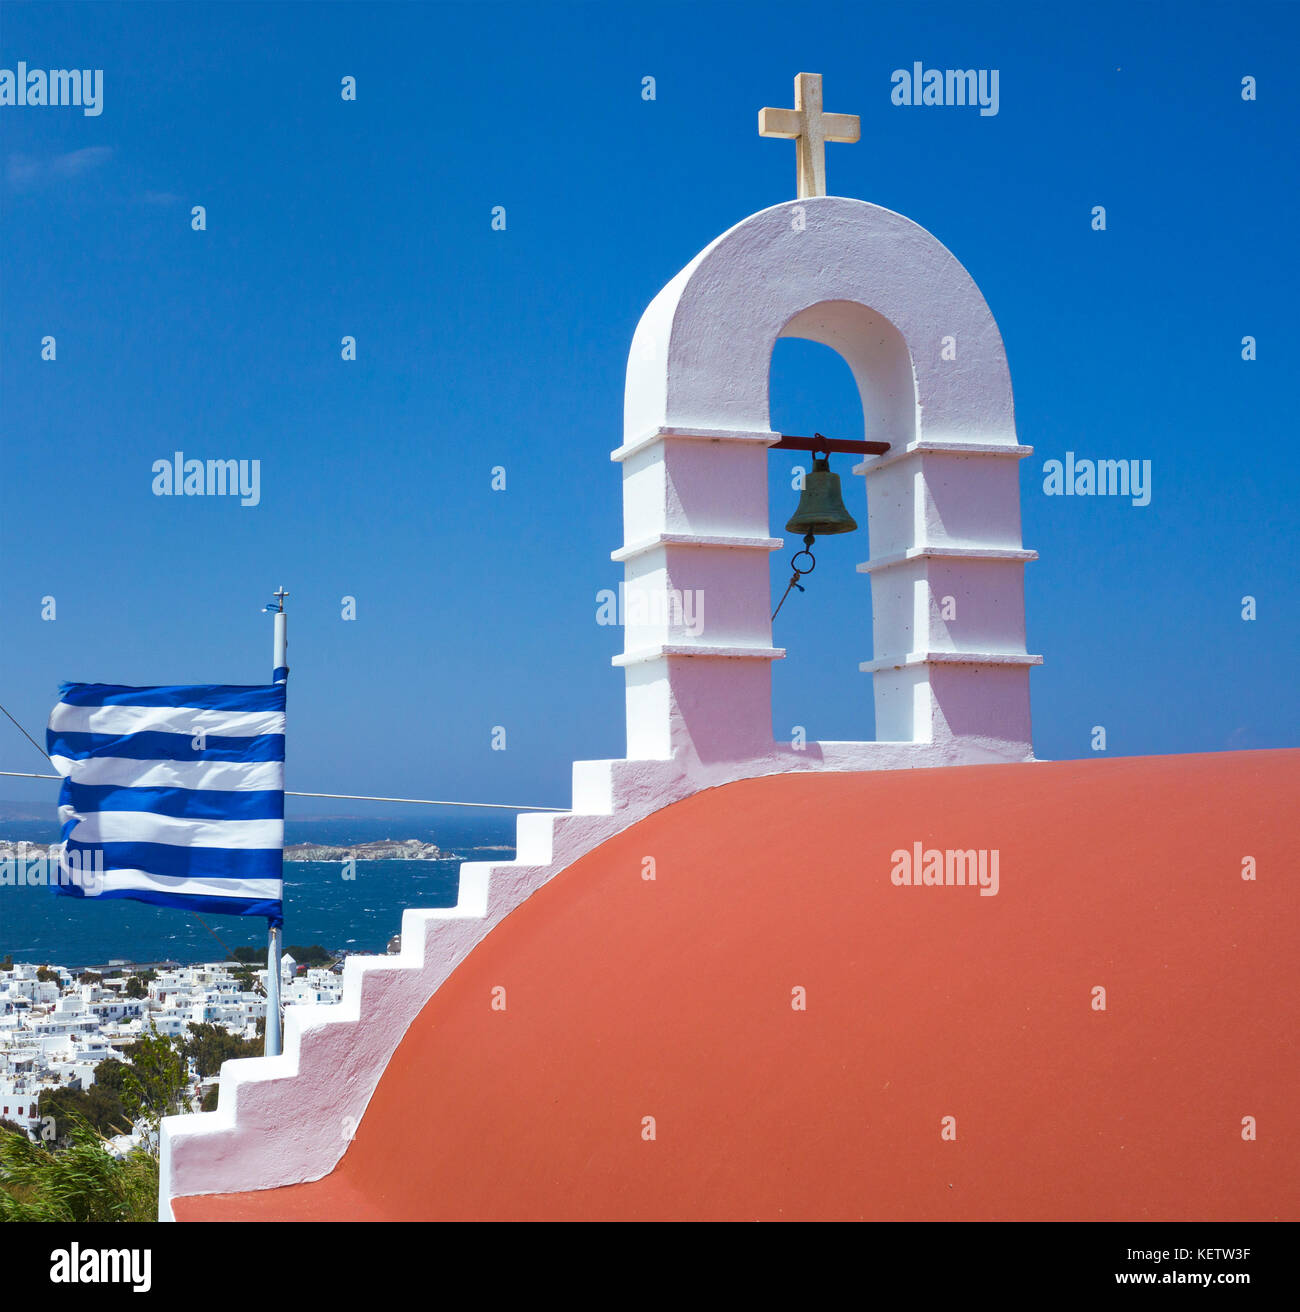 Kleine orthodoxe kapelle mit nationalfahne oberhalb von mykonos-Stadt, Mykonos, kykladen, aegaeis, griechenland, mittelmeer, europa | piccolo orthox cha Foto Stock